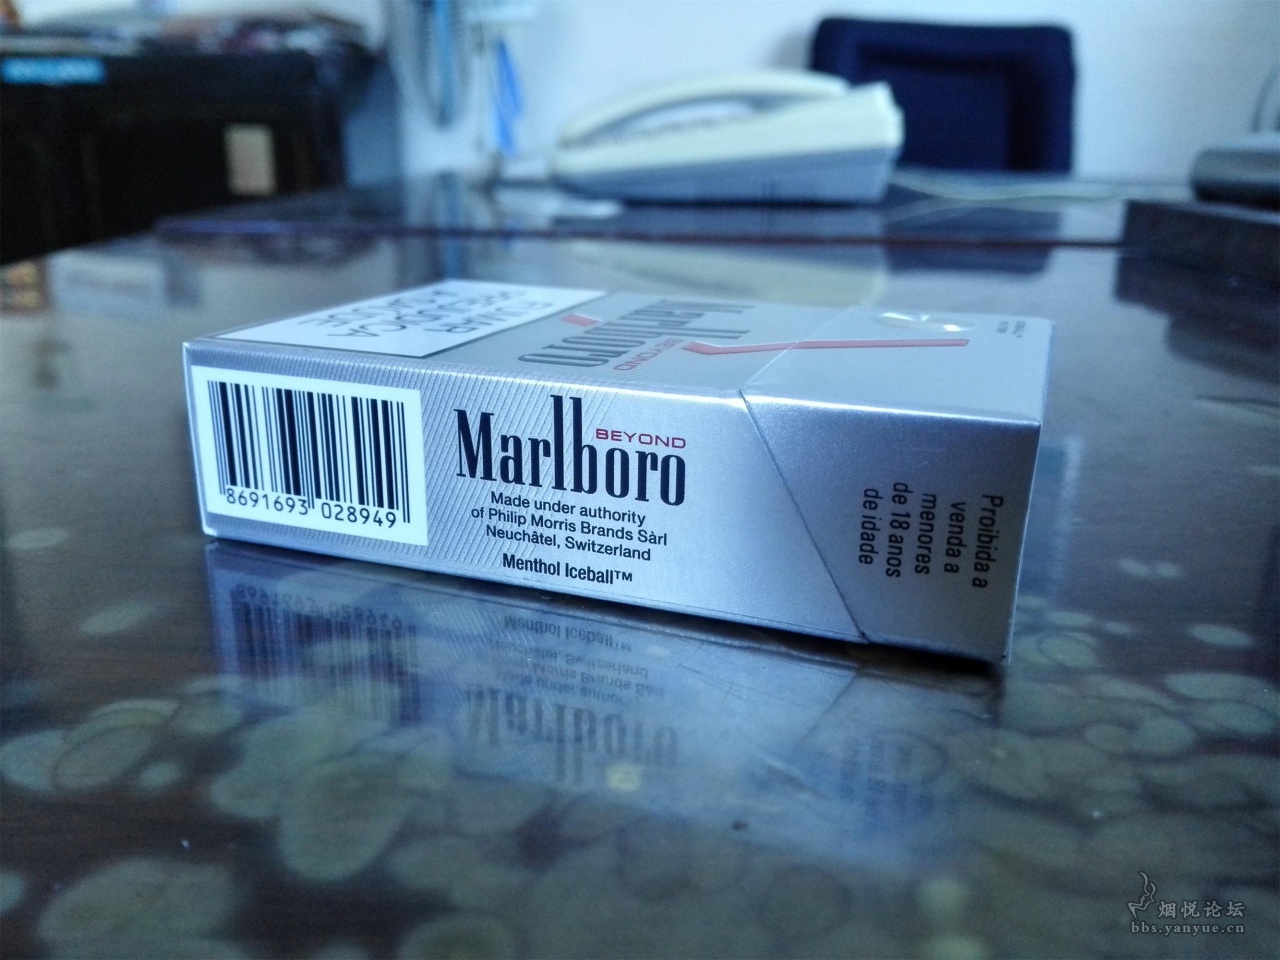 据说是安哥拉本土的香烟 - 香烟品鉴 - 烟悦网论坛